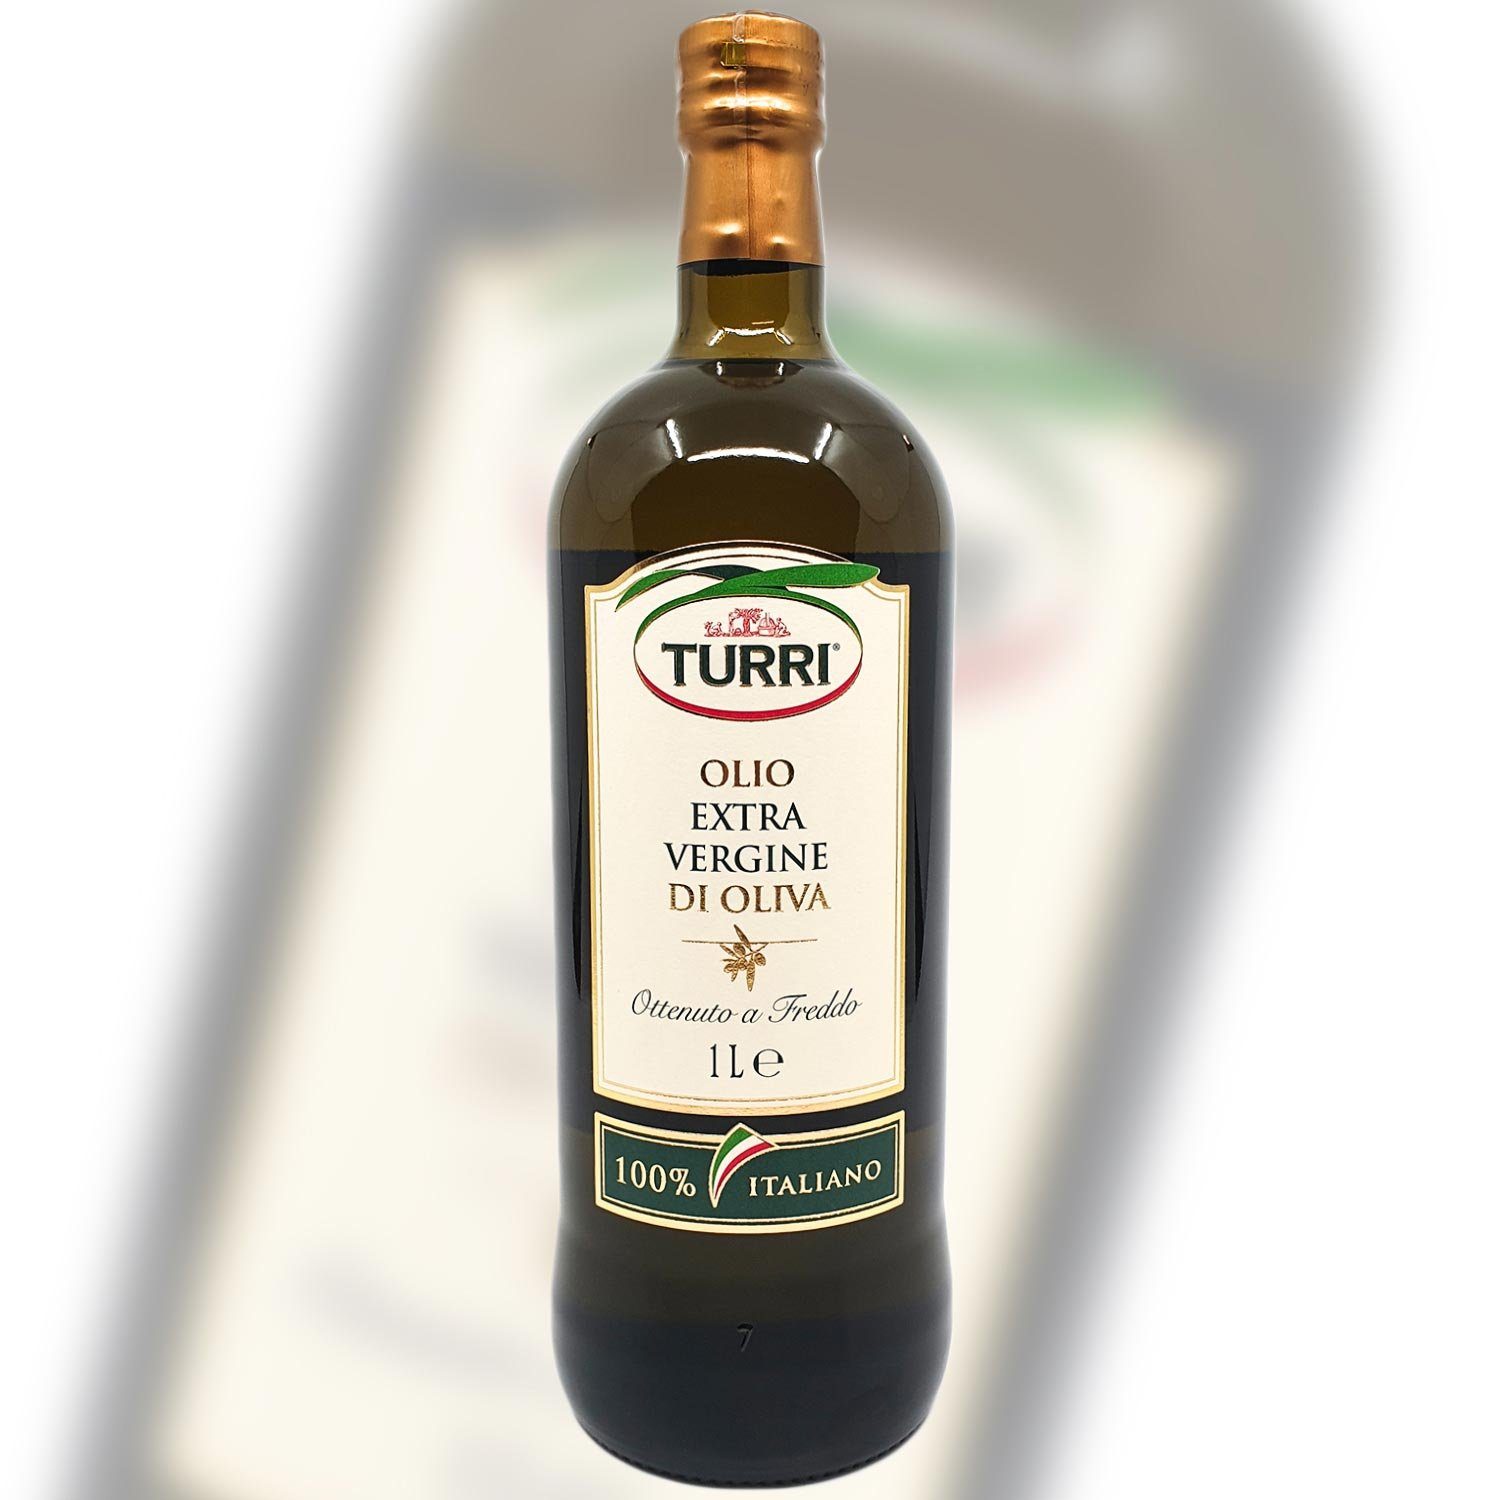 Landshop24 Gewürzregal Turri Olivenöl extra vergine, 1 Liter, 100% Original Italien, MHD: 24-01-2025 1-tlg., Speiseöl Italien Gardasee